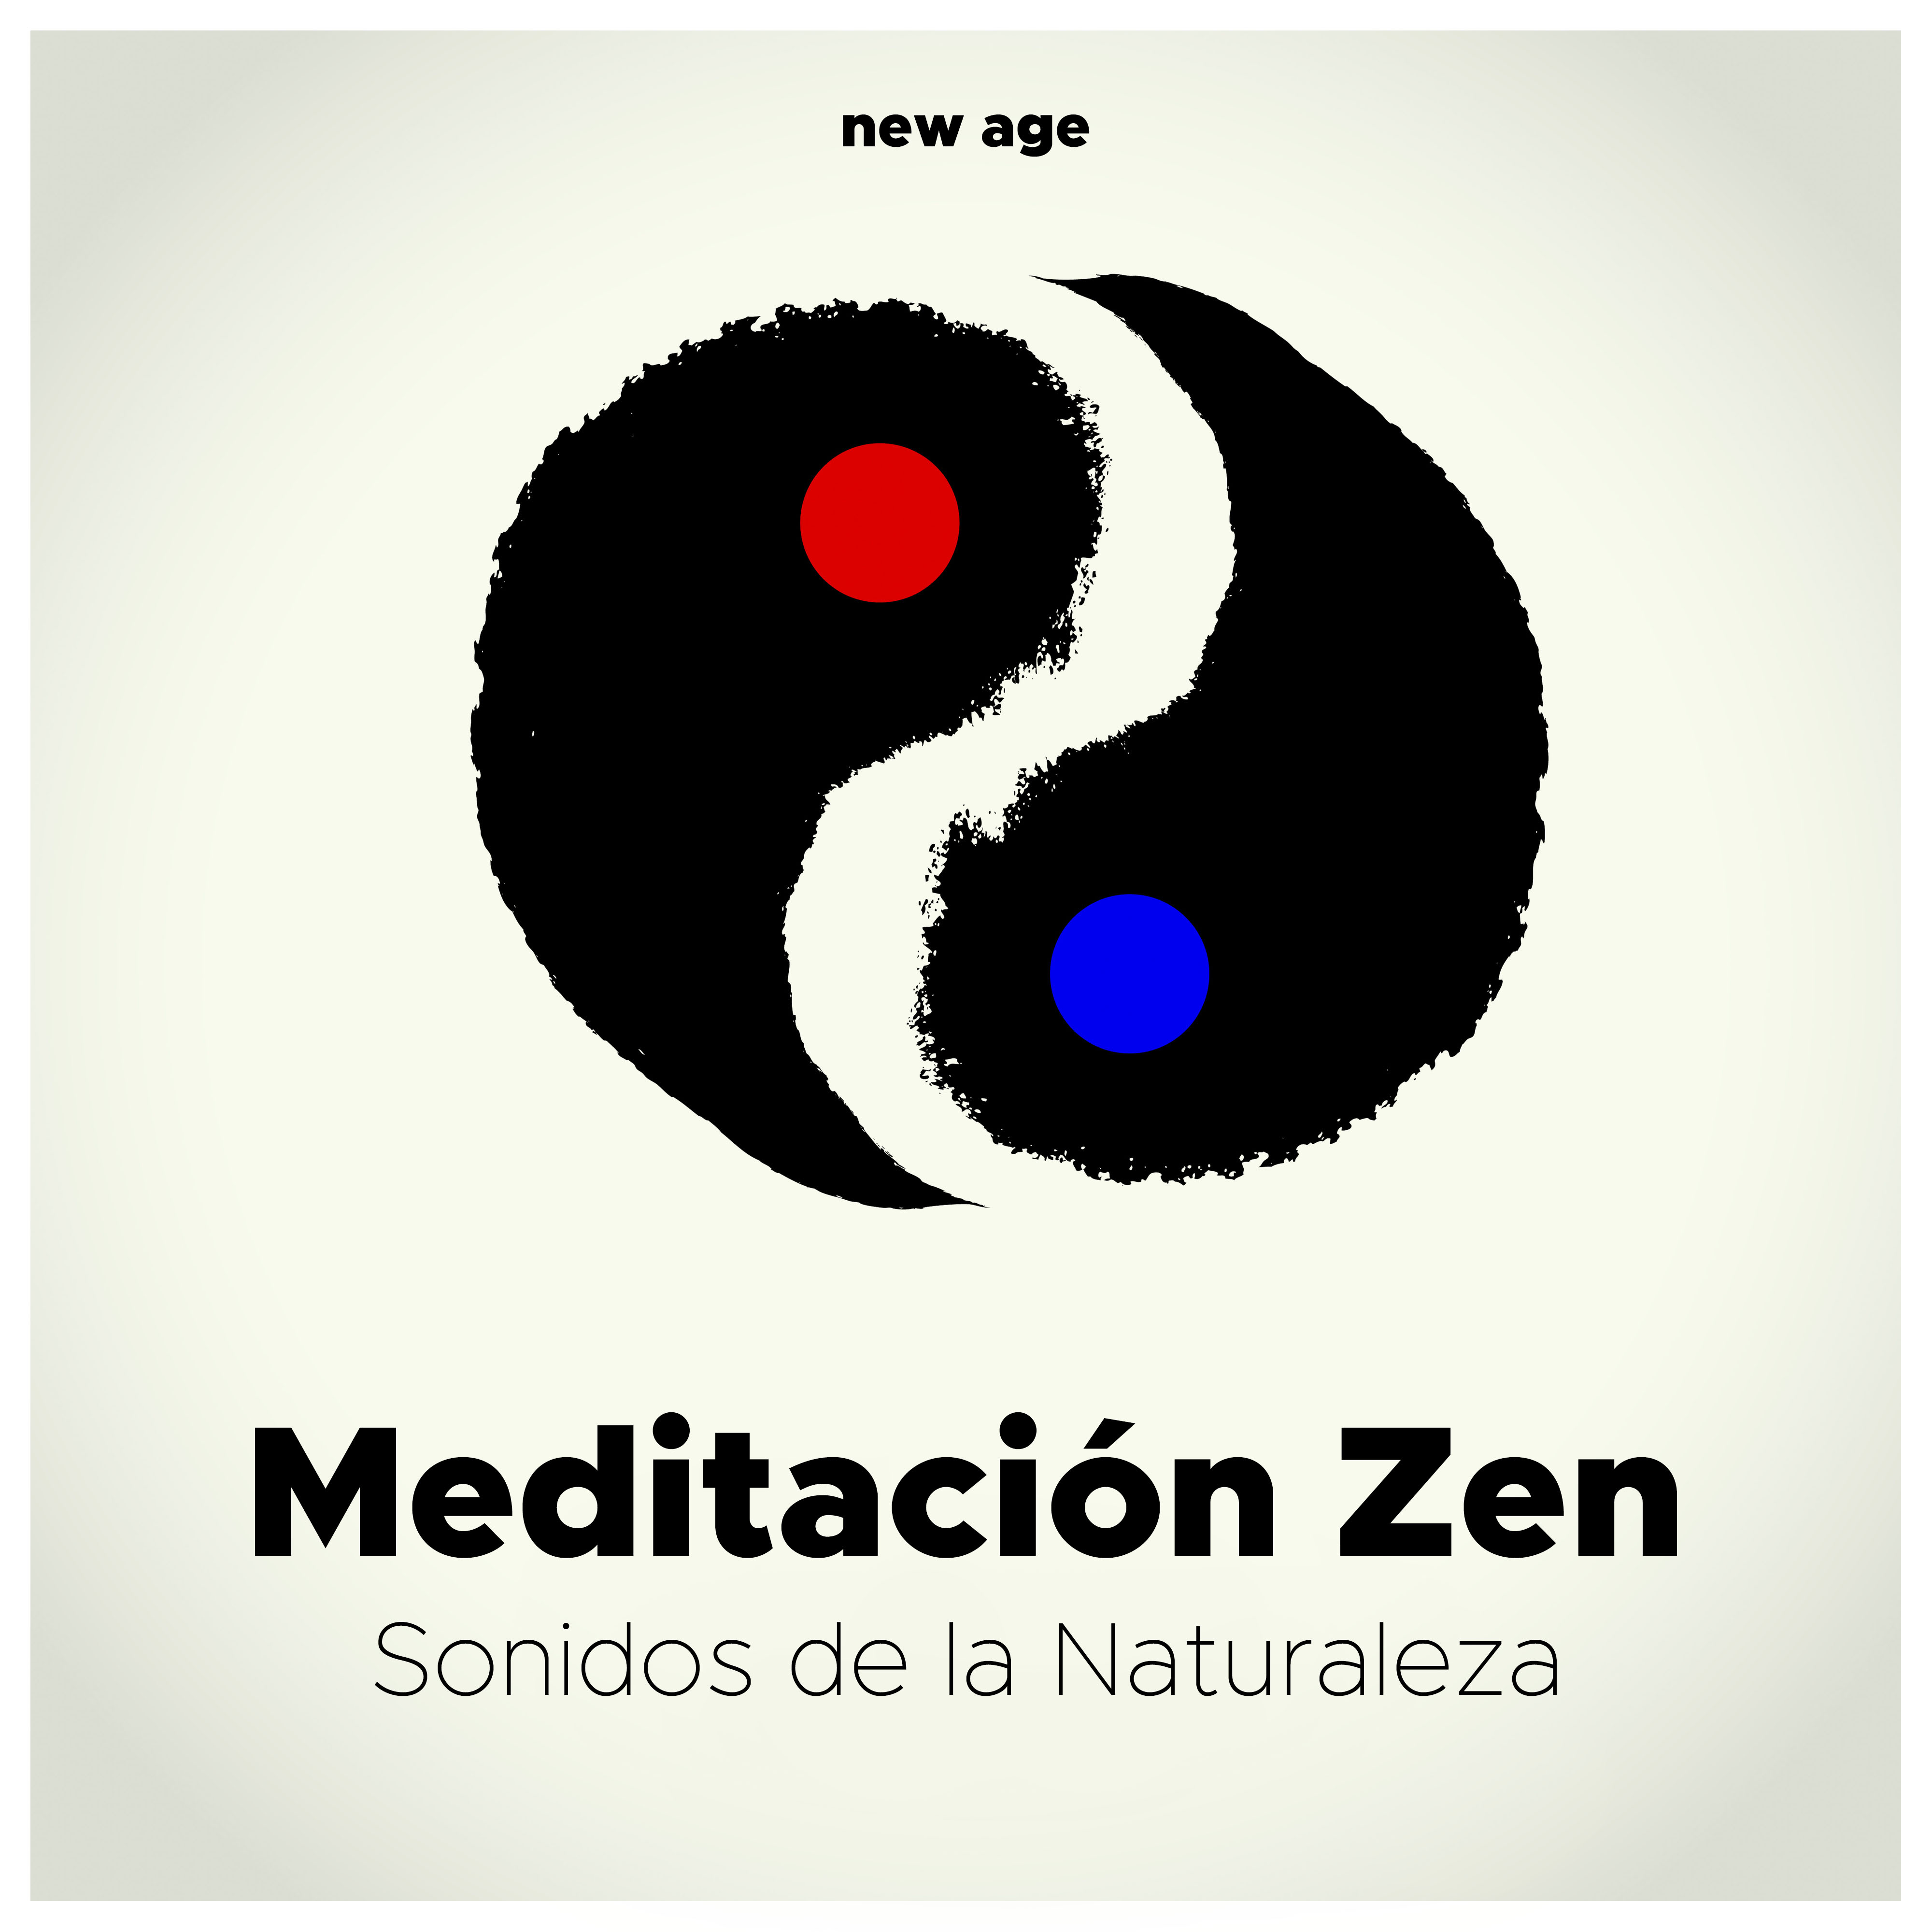 Meditacio n Zen  Sonidos de la Naturaleza